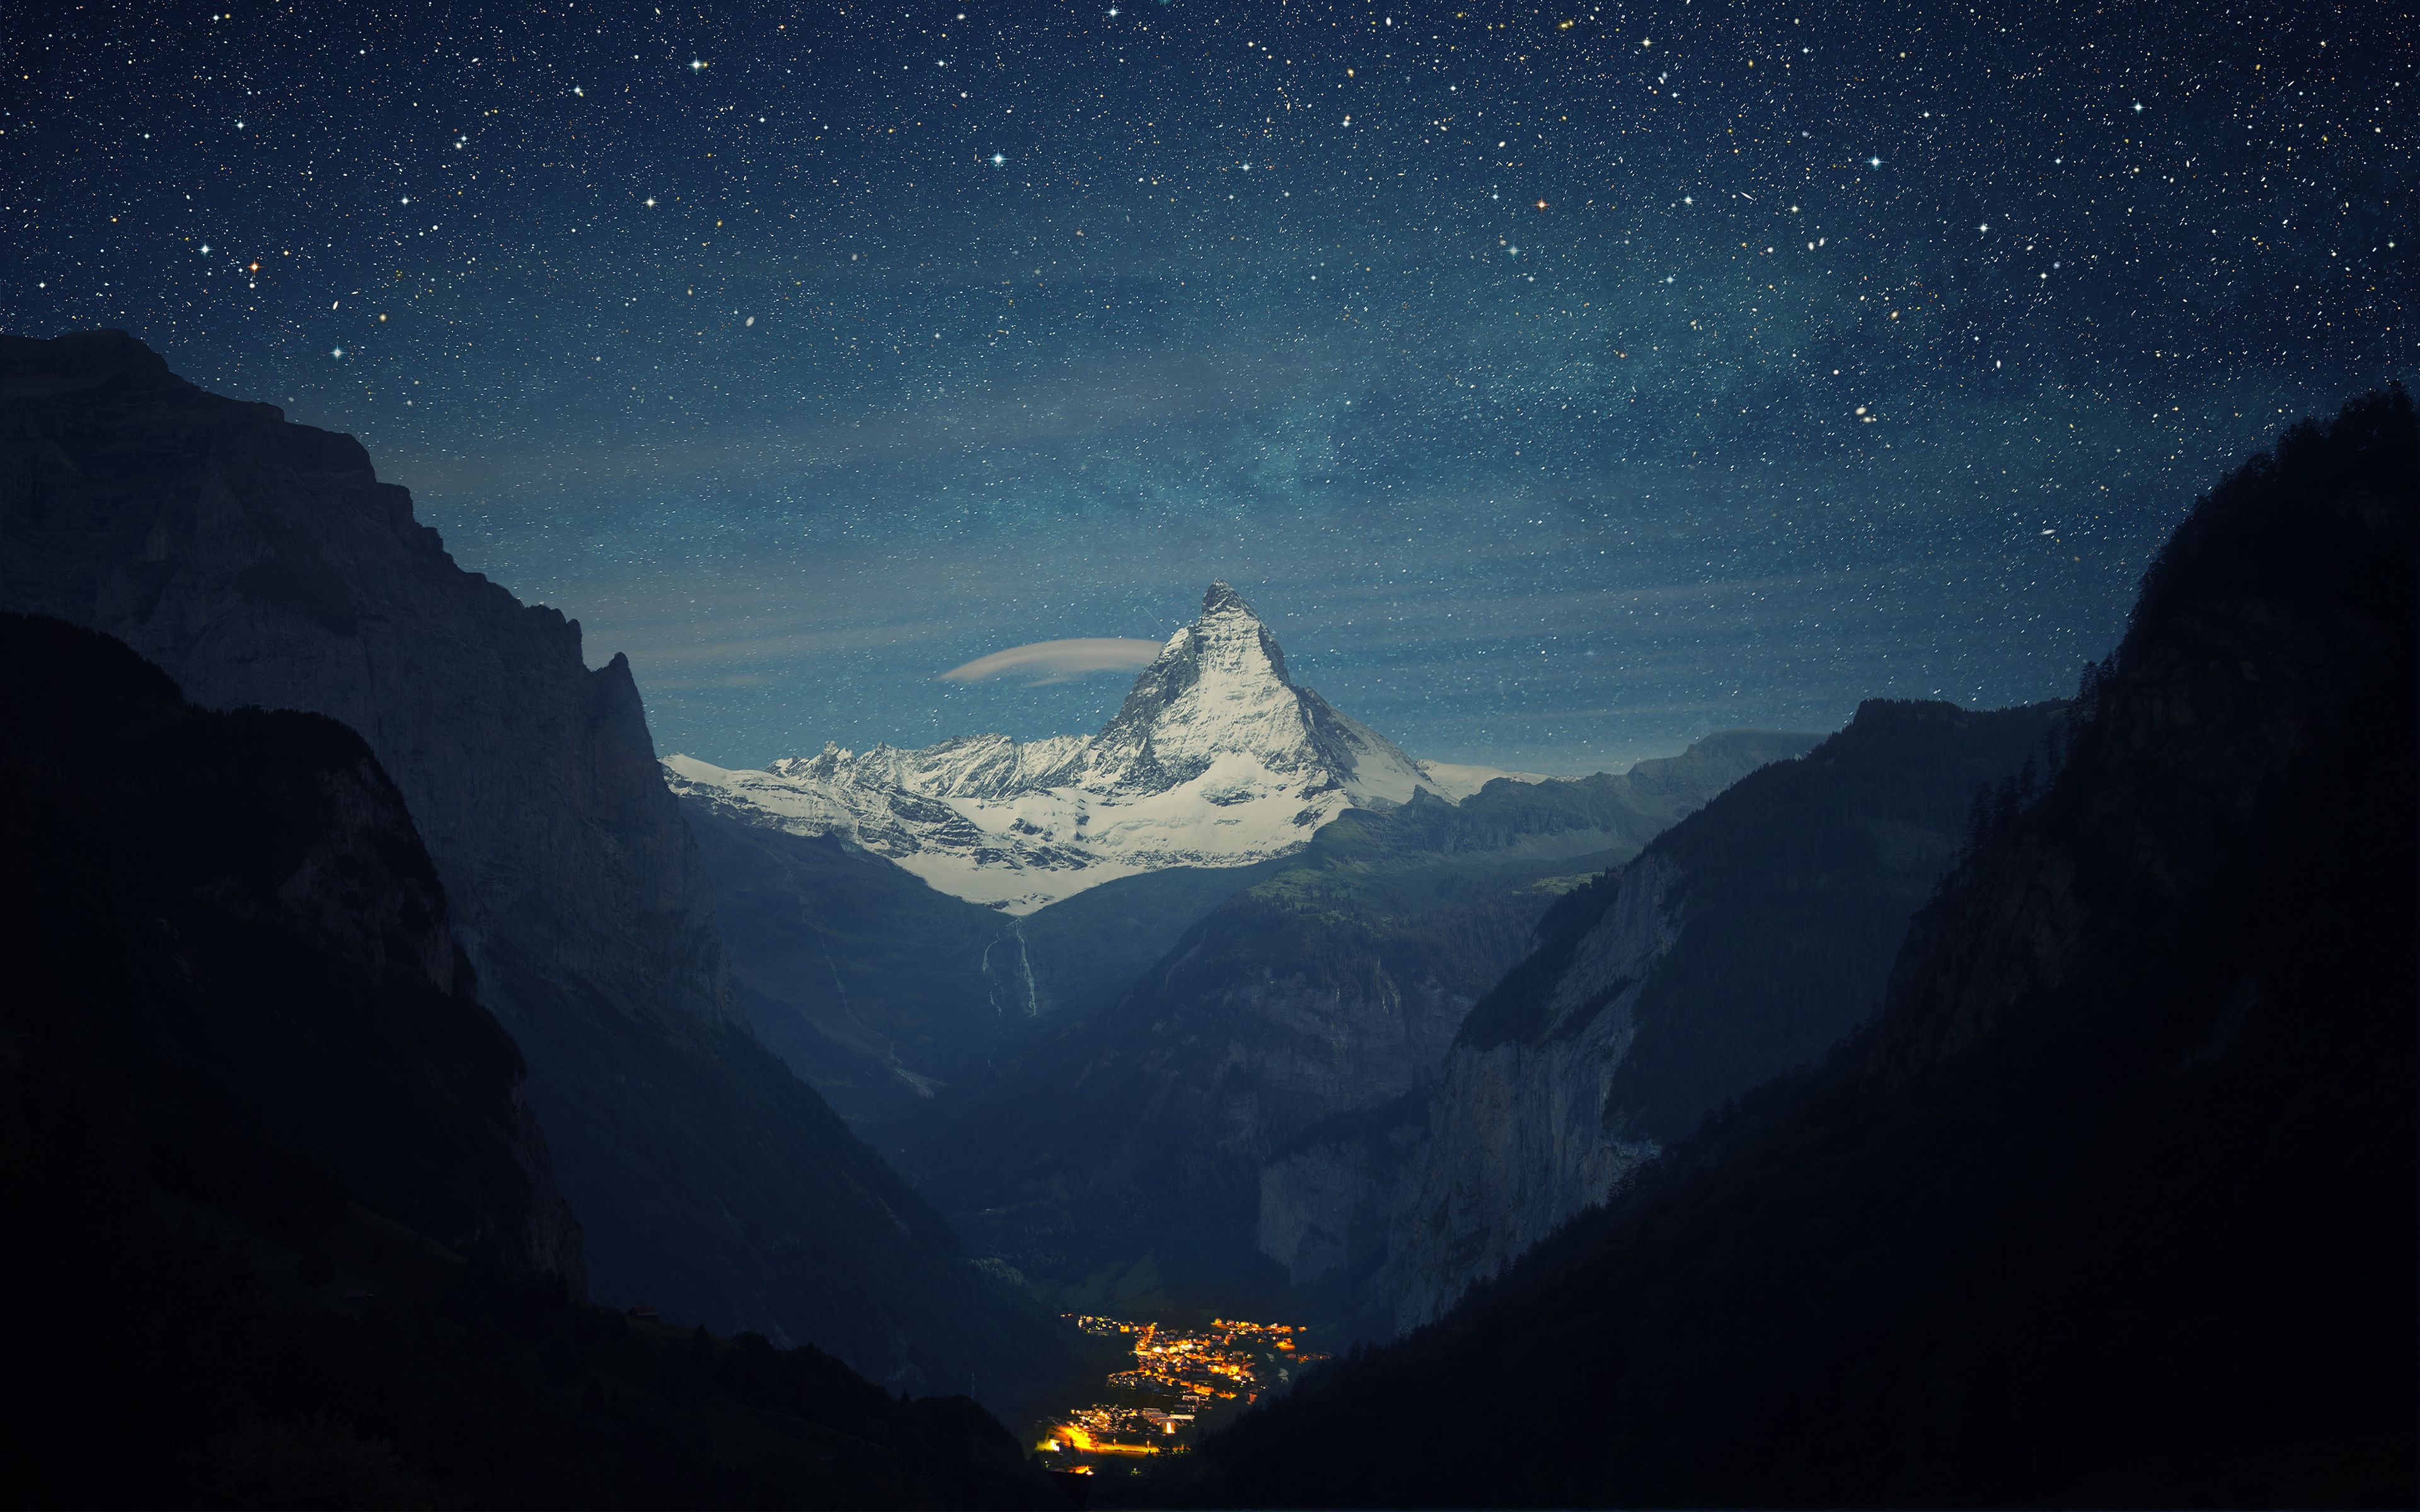 Night Mountain Wallpaper Images  Free Download on Freepik